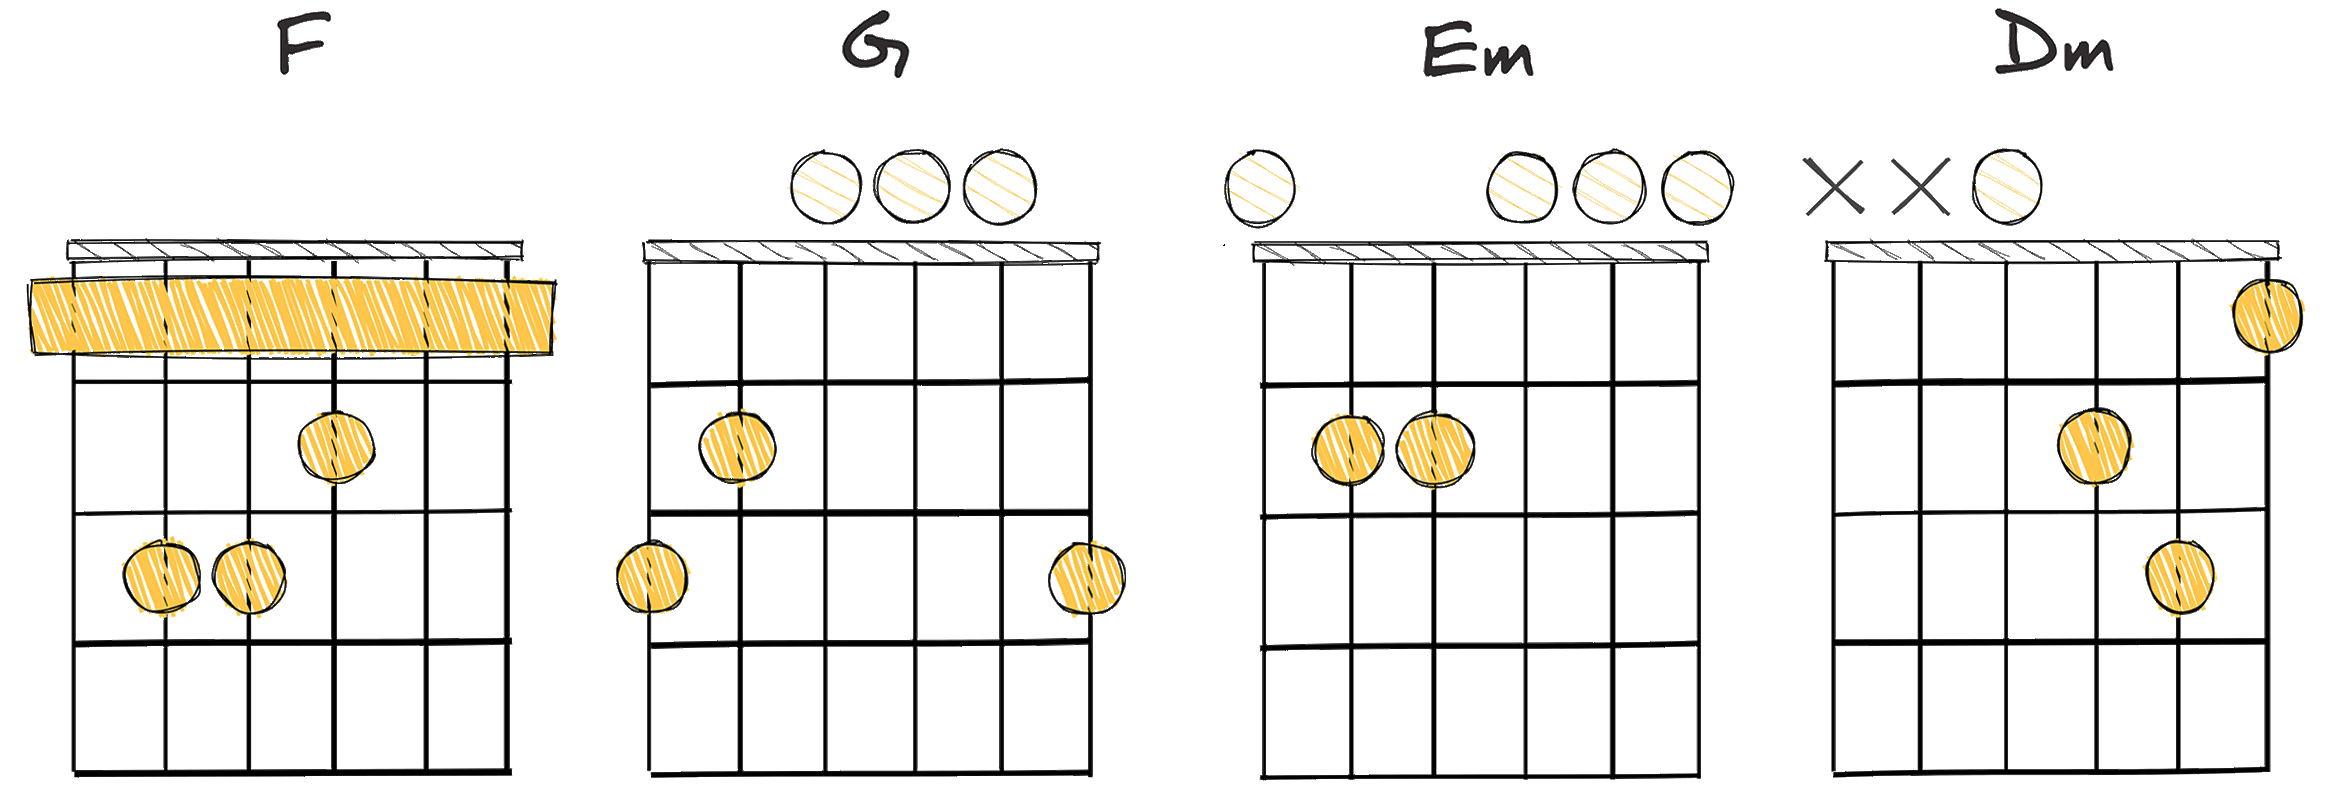 IV - V - iii - ii (4 - 5 - 3 - 2) chords diagram